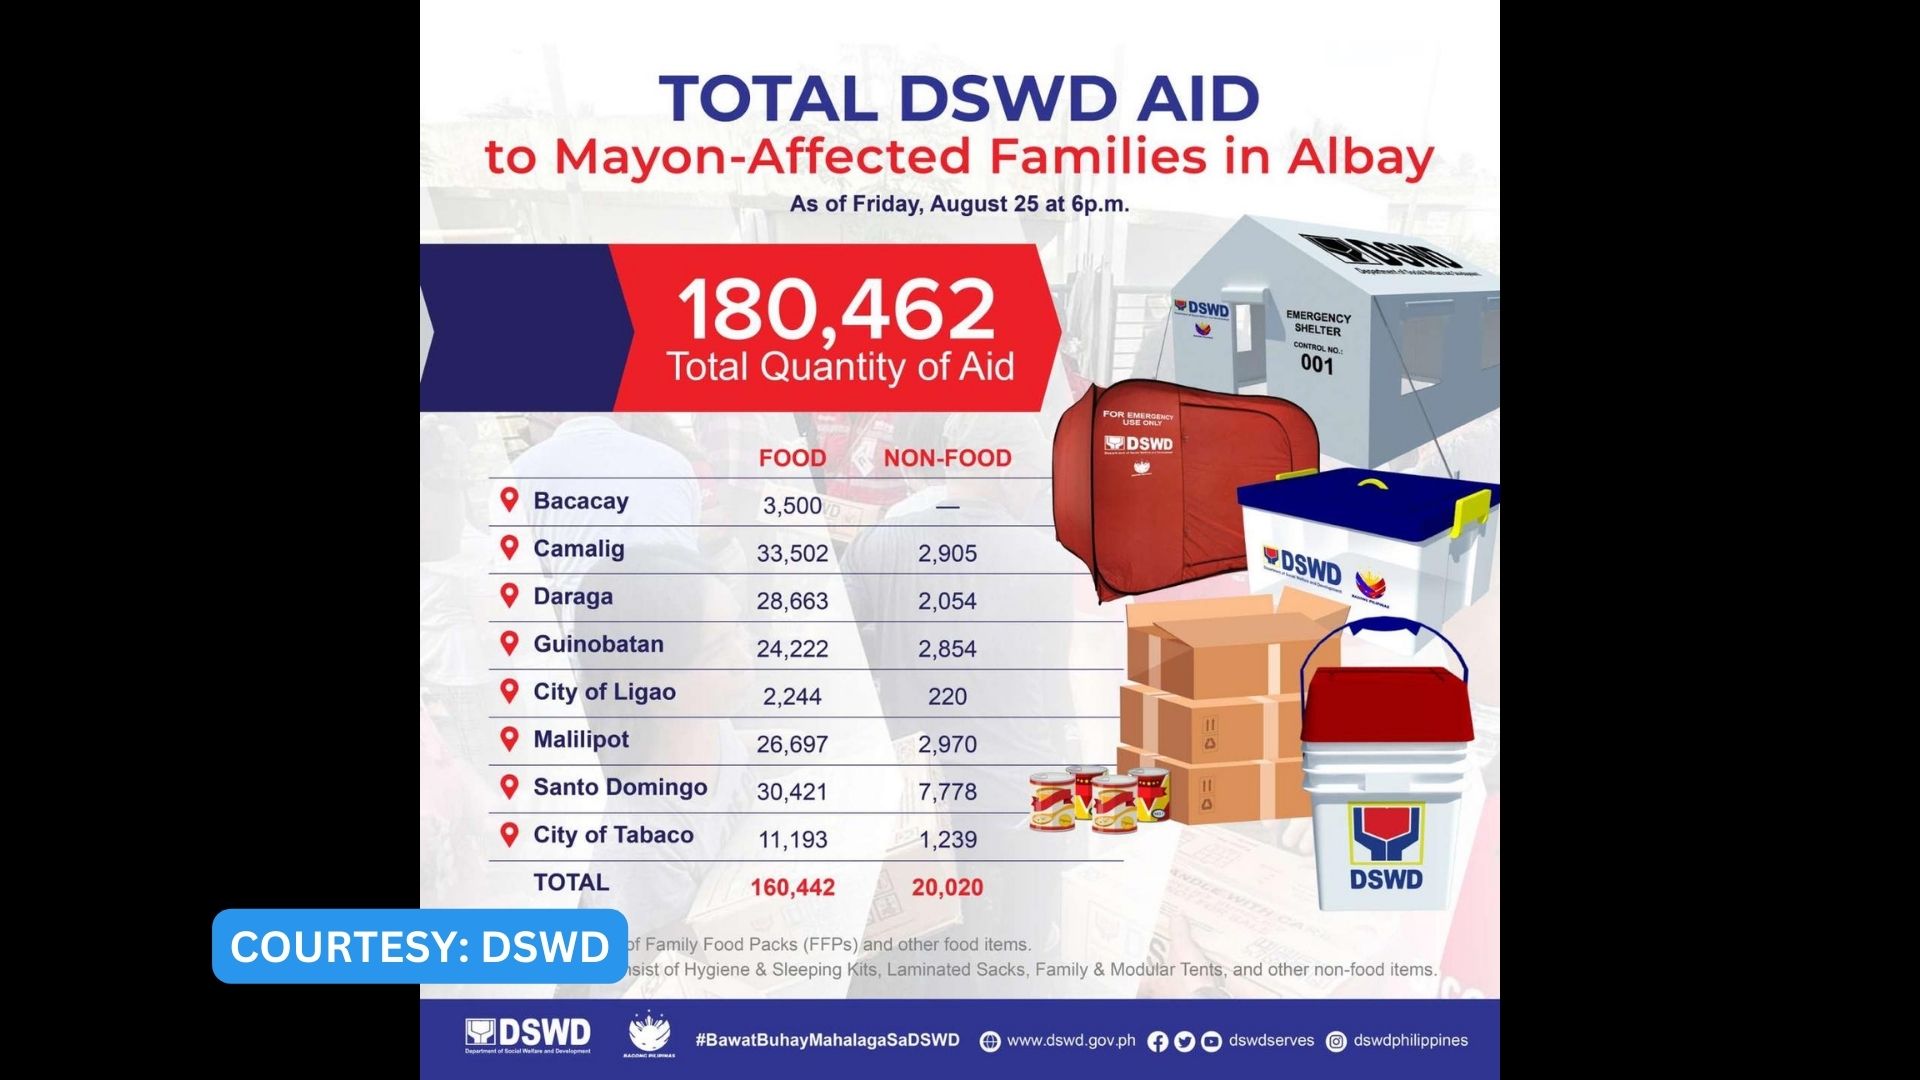 Mahigit 180,000 food and non-food items naimapahagi ng DSWD sa Bicol Region